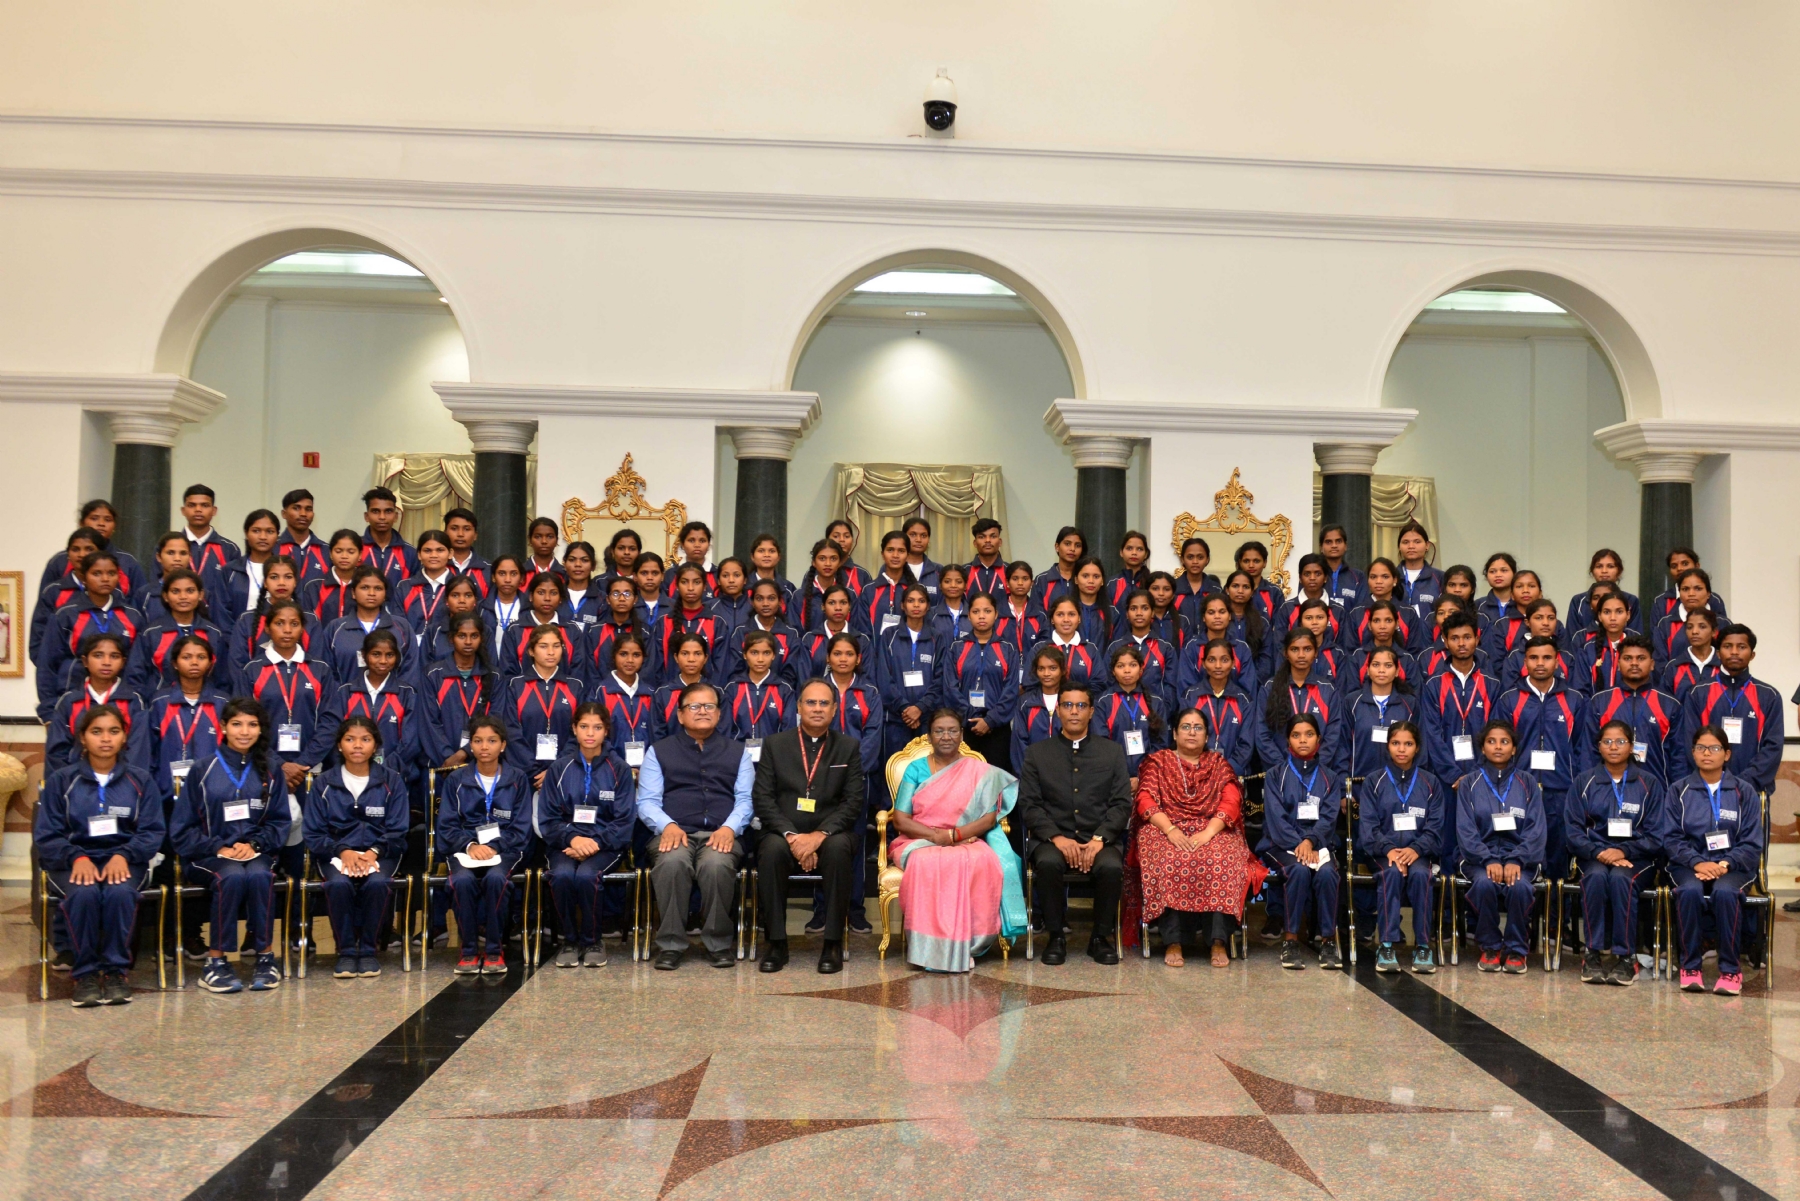 नई दिल्ली में रविवार 05 नवंबर को राष्ट्रपति को श्रीमती द्रौपदी मुर्मु का गृह मंत्रालय के जनजातीय युवा आदान प्रदान कार्यक्रम के तहत राष्ट्रपति भवन में आए वाओं को सम्बोधन करते हुए। हिन्दुस्थान समाचार/ फोटो गणेश बिष्ट